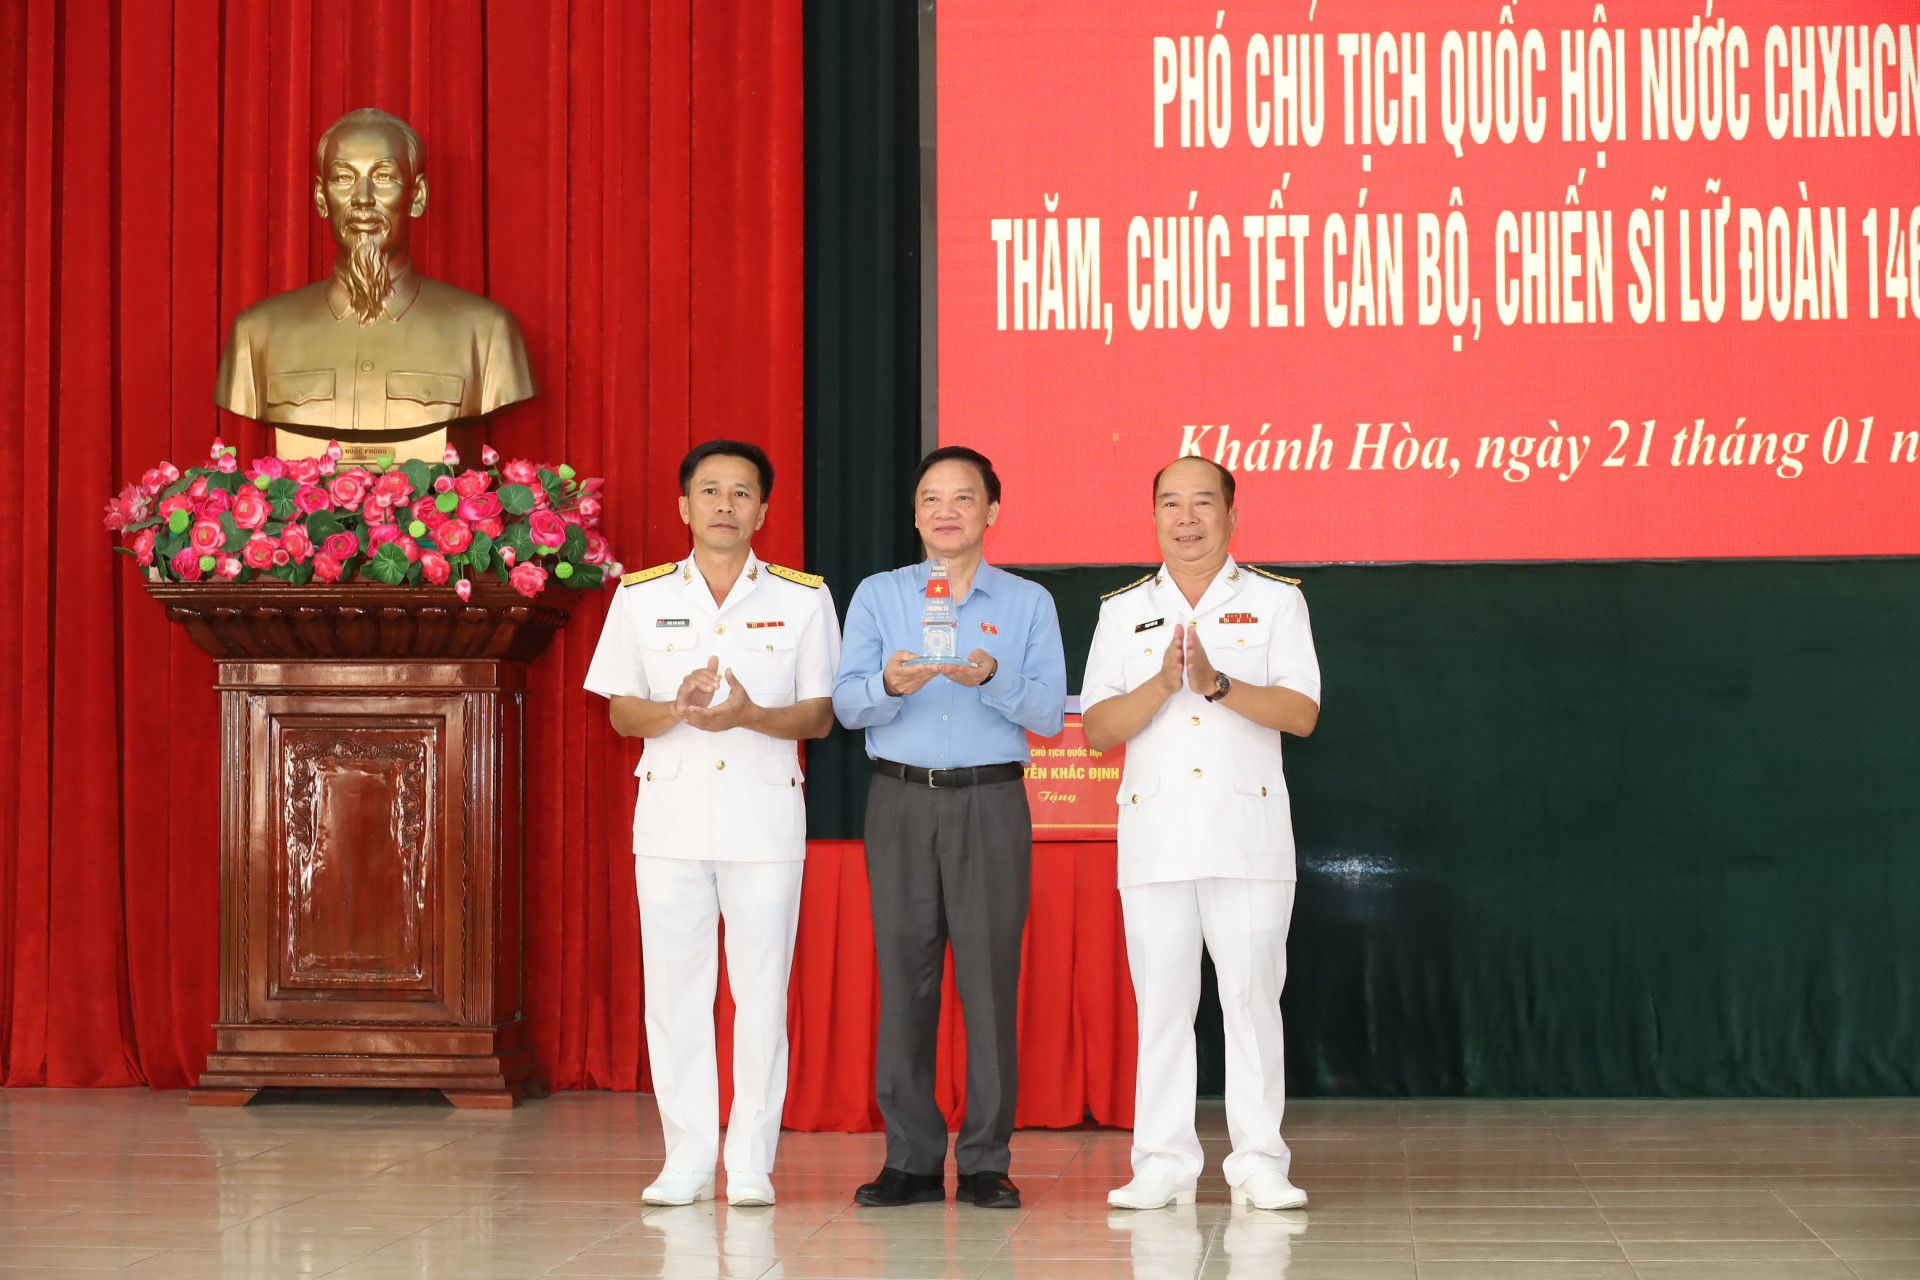 Lãnh đạo Lữ đoàn 146 trao tặng đồng chí Nguyễn Khắc Định món quà lưu niệm.